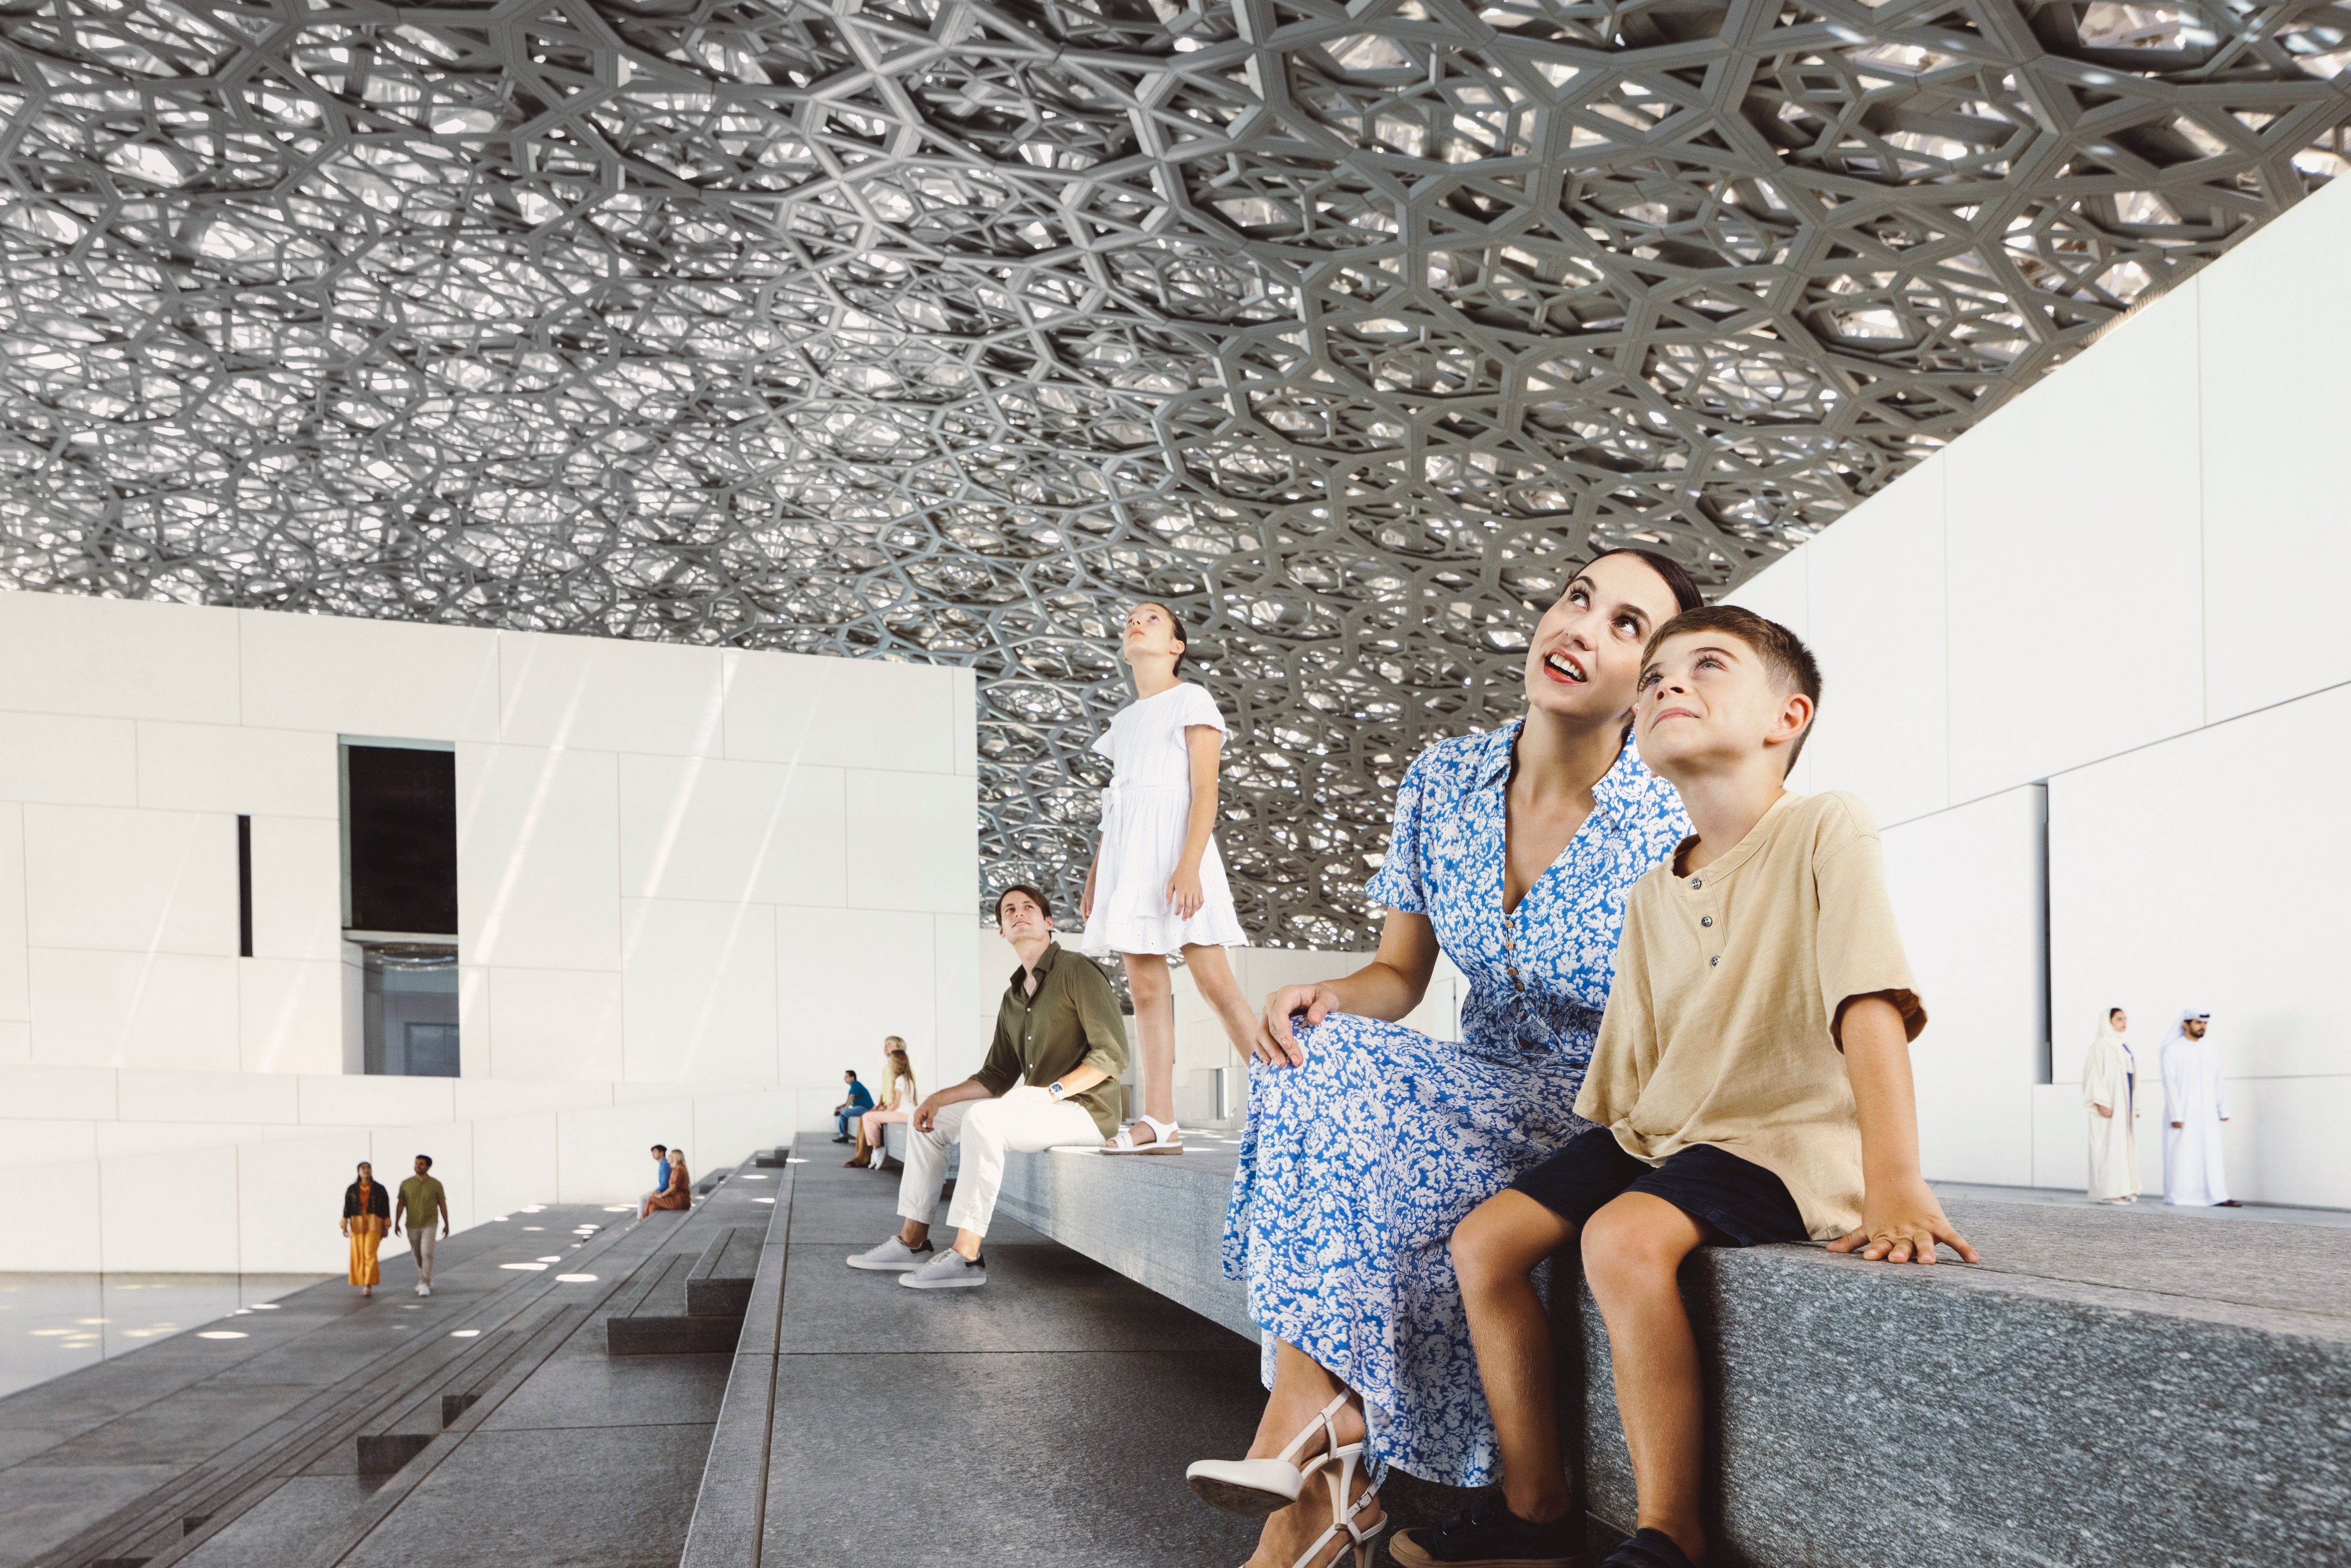 عائلة أجنبية من أربعة أفراد تتأمل الأعجوبة المعمارية أعلى الدرج الخارجي لمتحف اللوفر أبوظبي